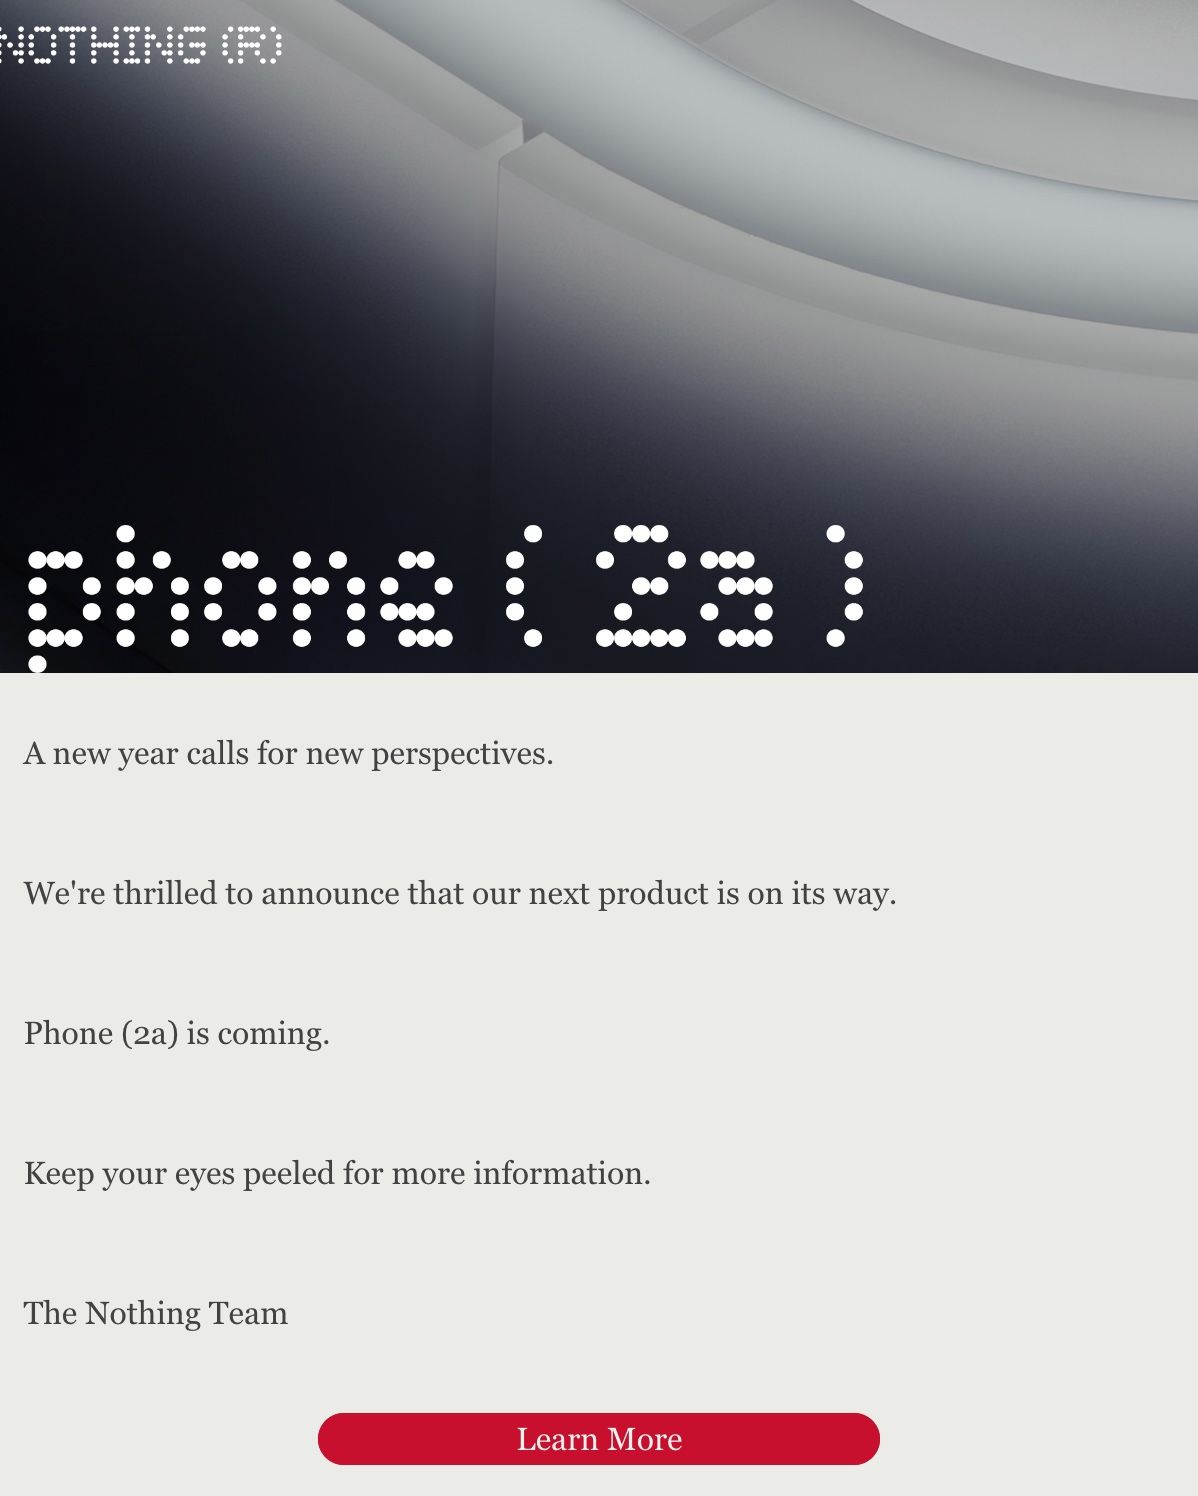 Uma captura de tela do e-mail teaser do Nothing Phone 2a